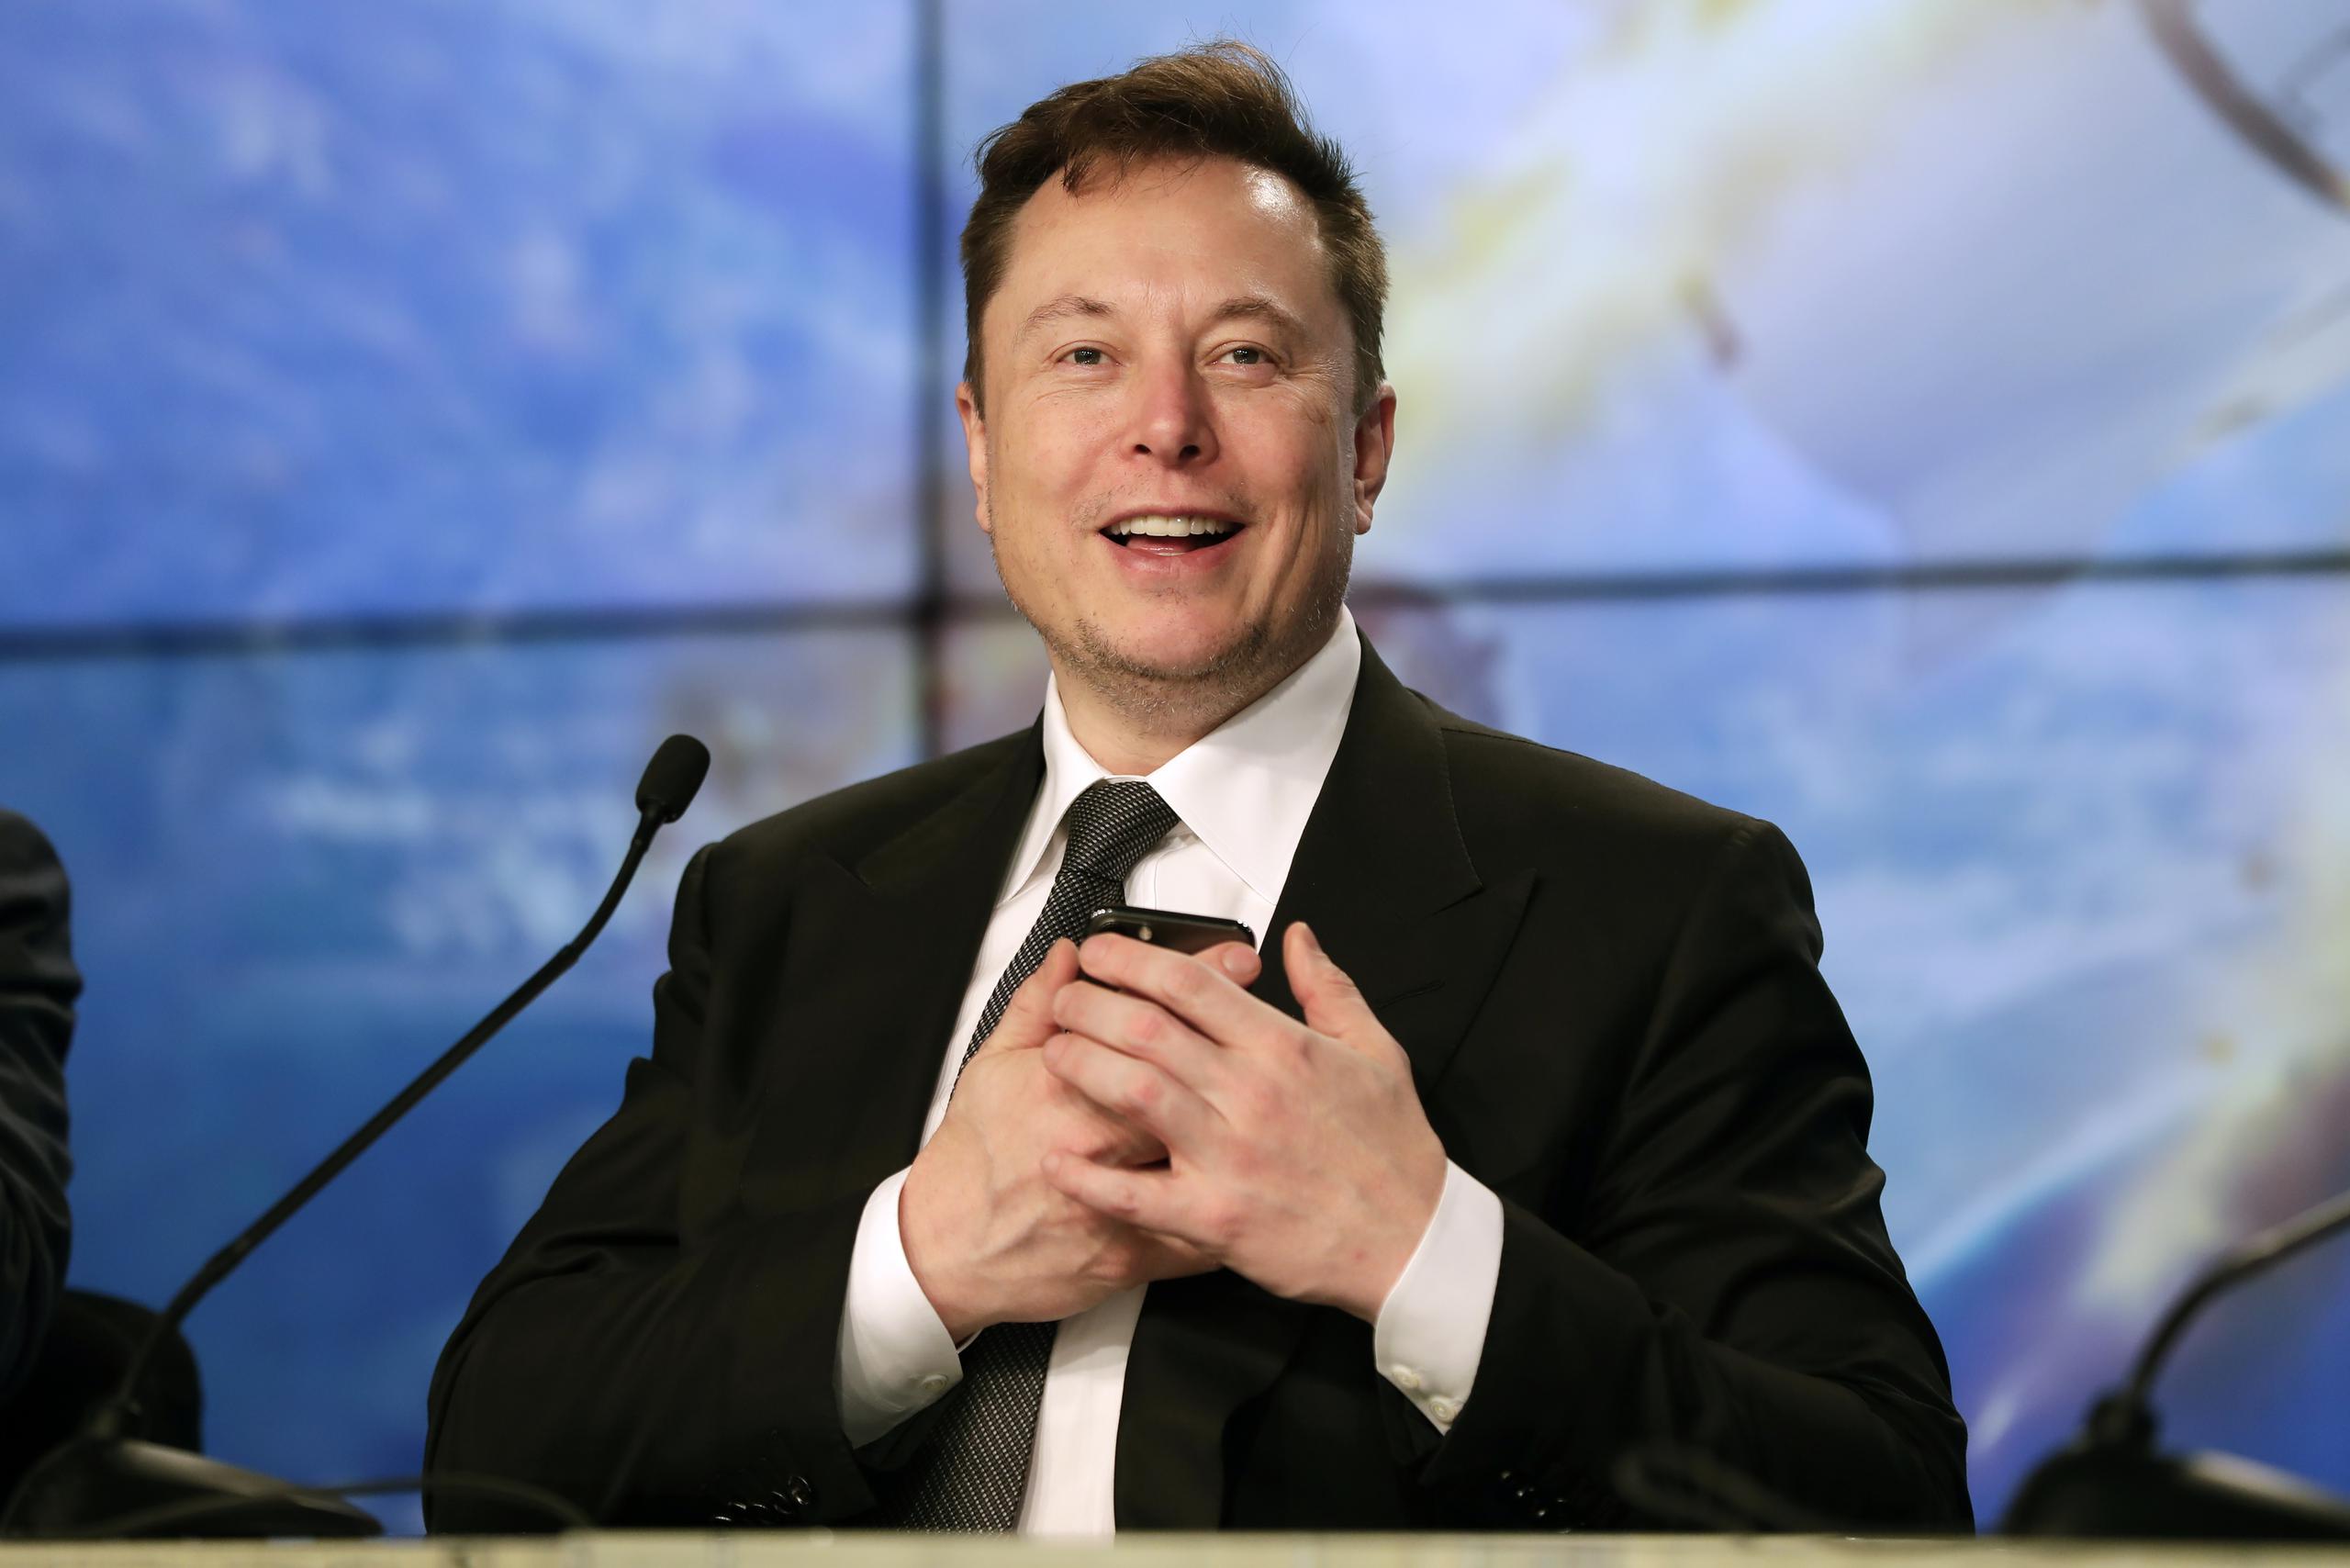 Elon Musk recalca hoy día tener una relación muy sólida de amistad con Amber Heard y ha reconocido que la apoya en su batalla legal contra Johnny Depp.